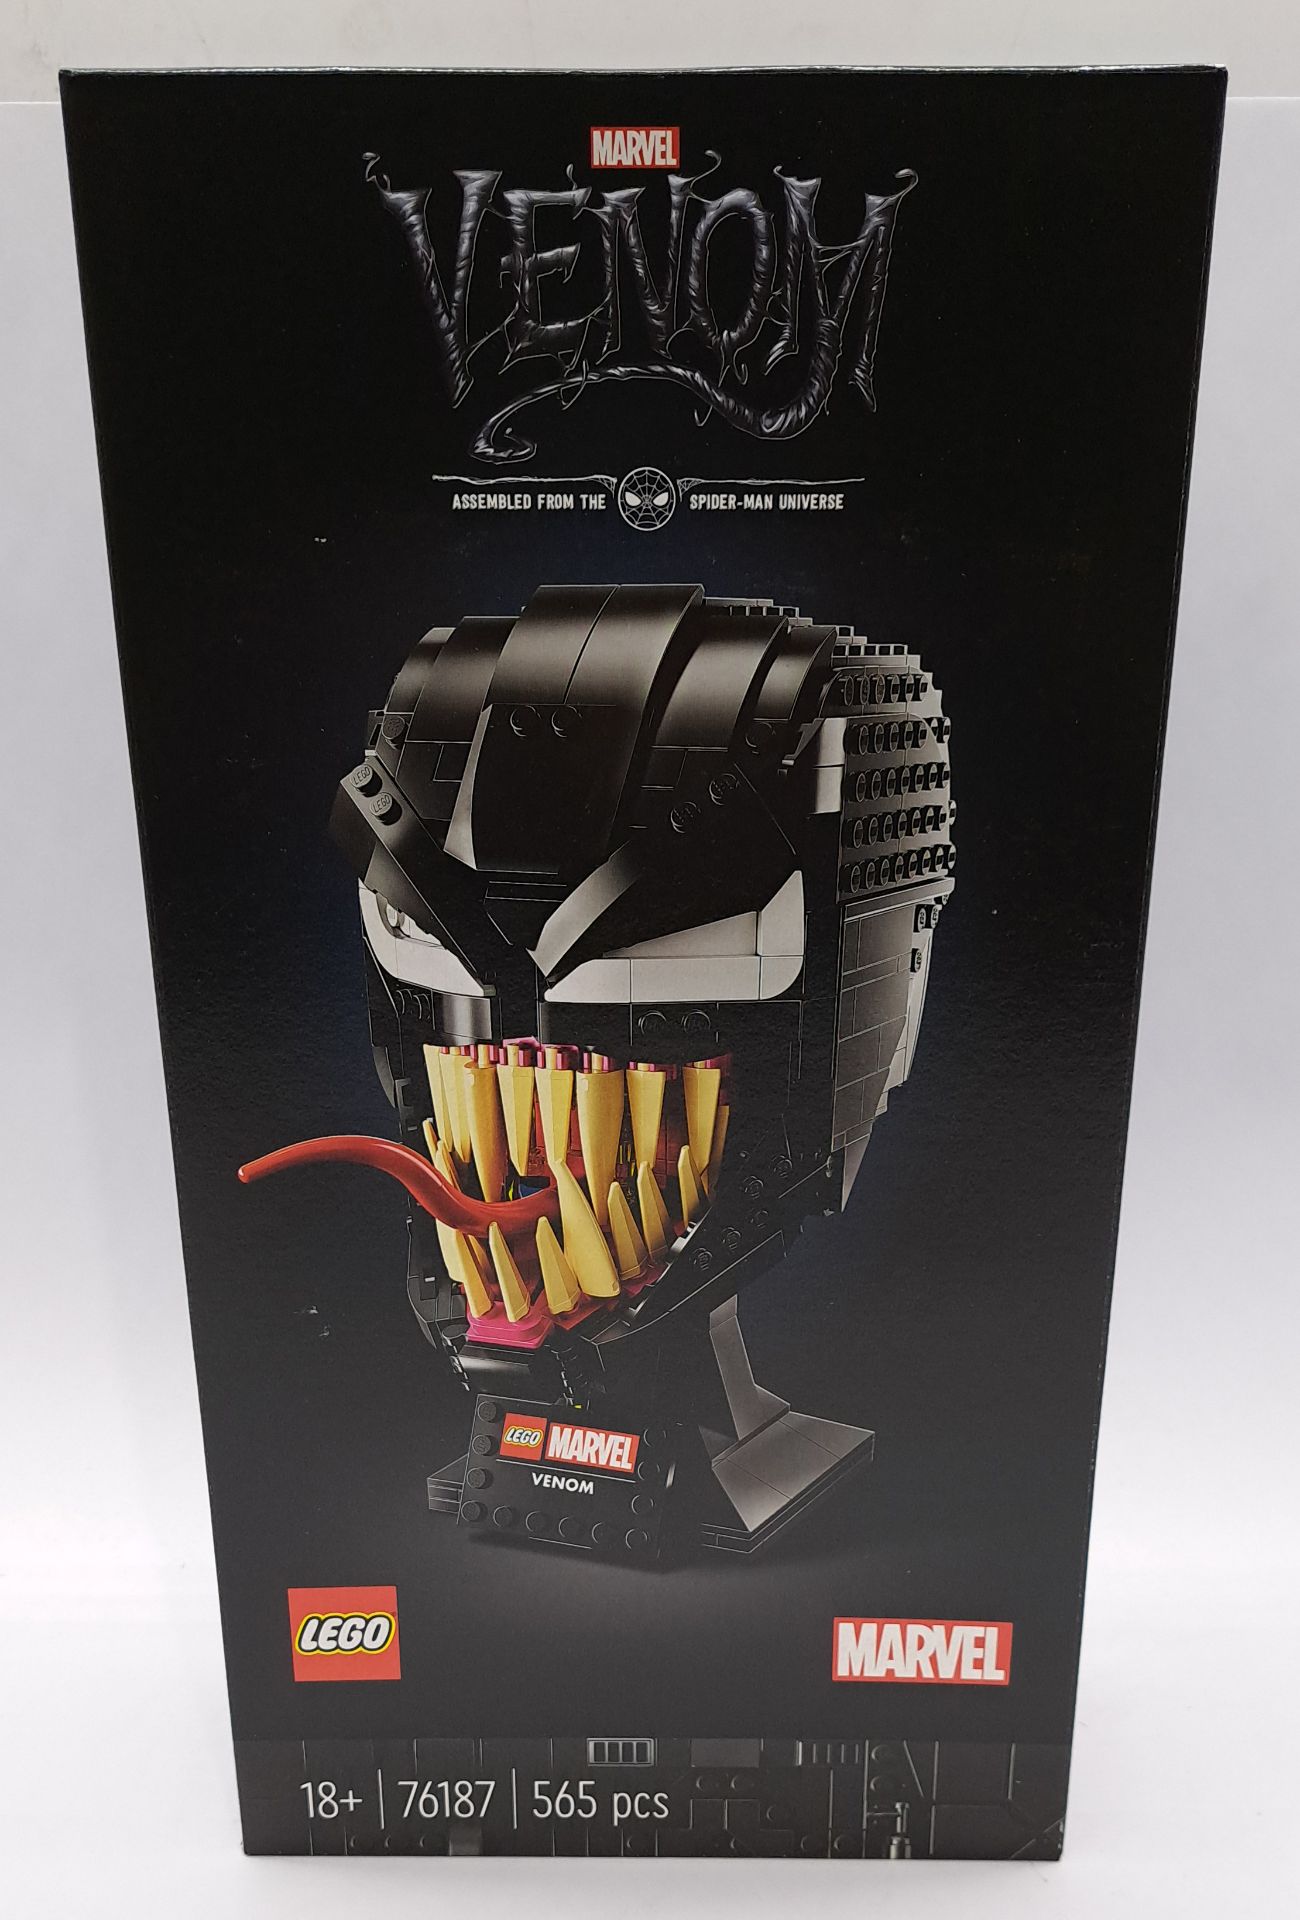 Lego Marvel Venom set 76187